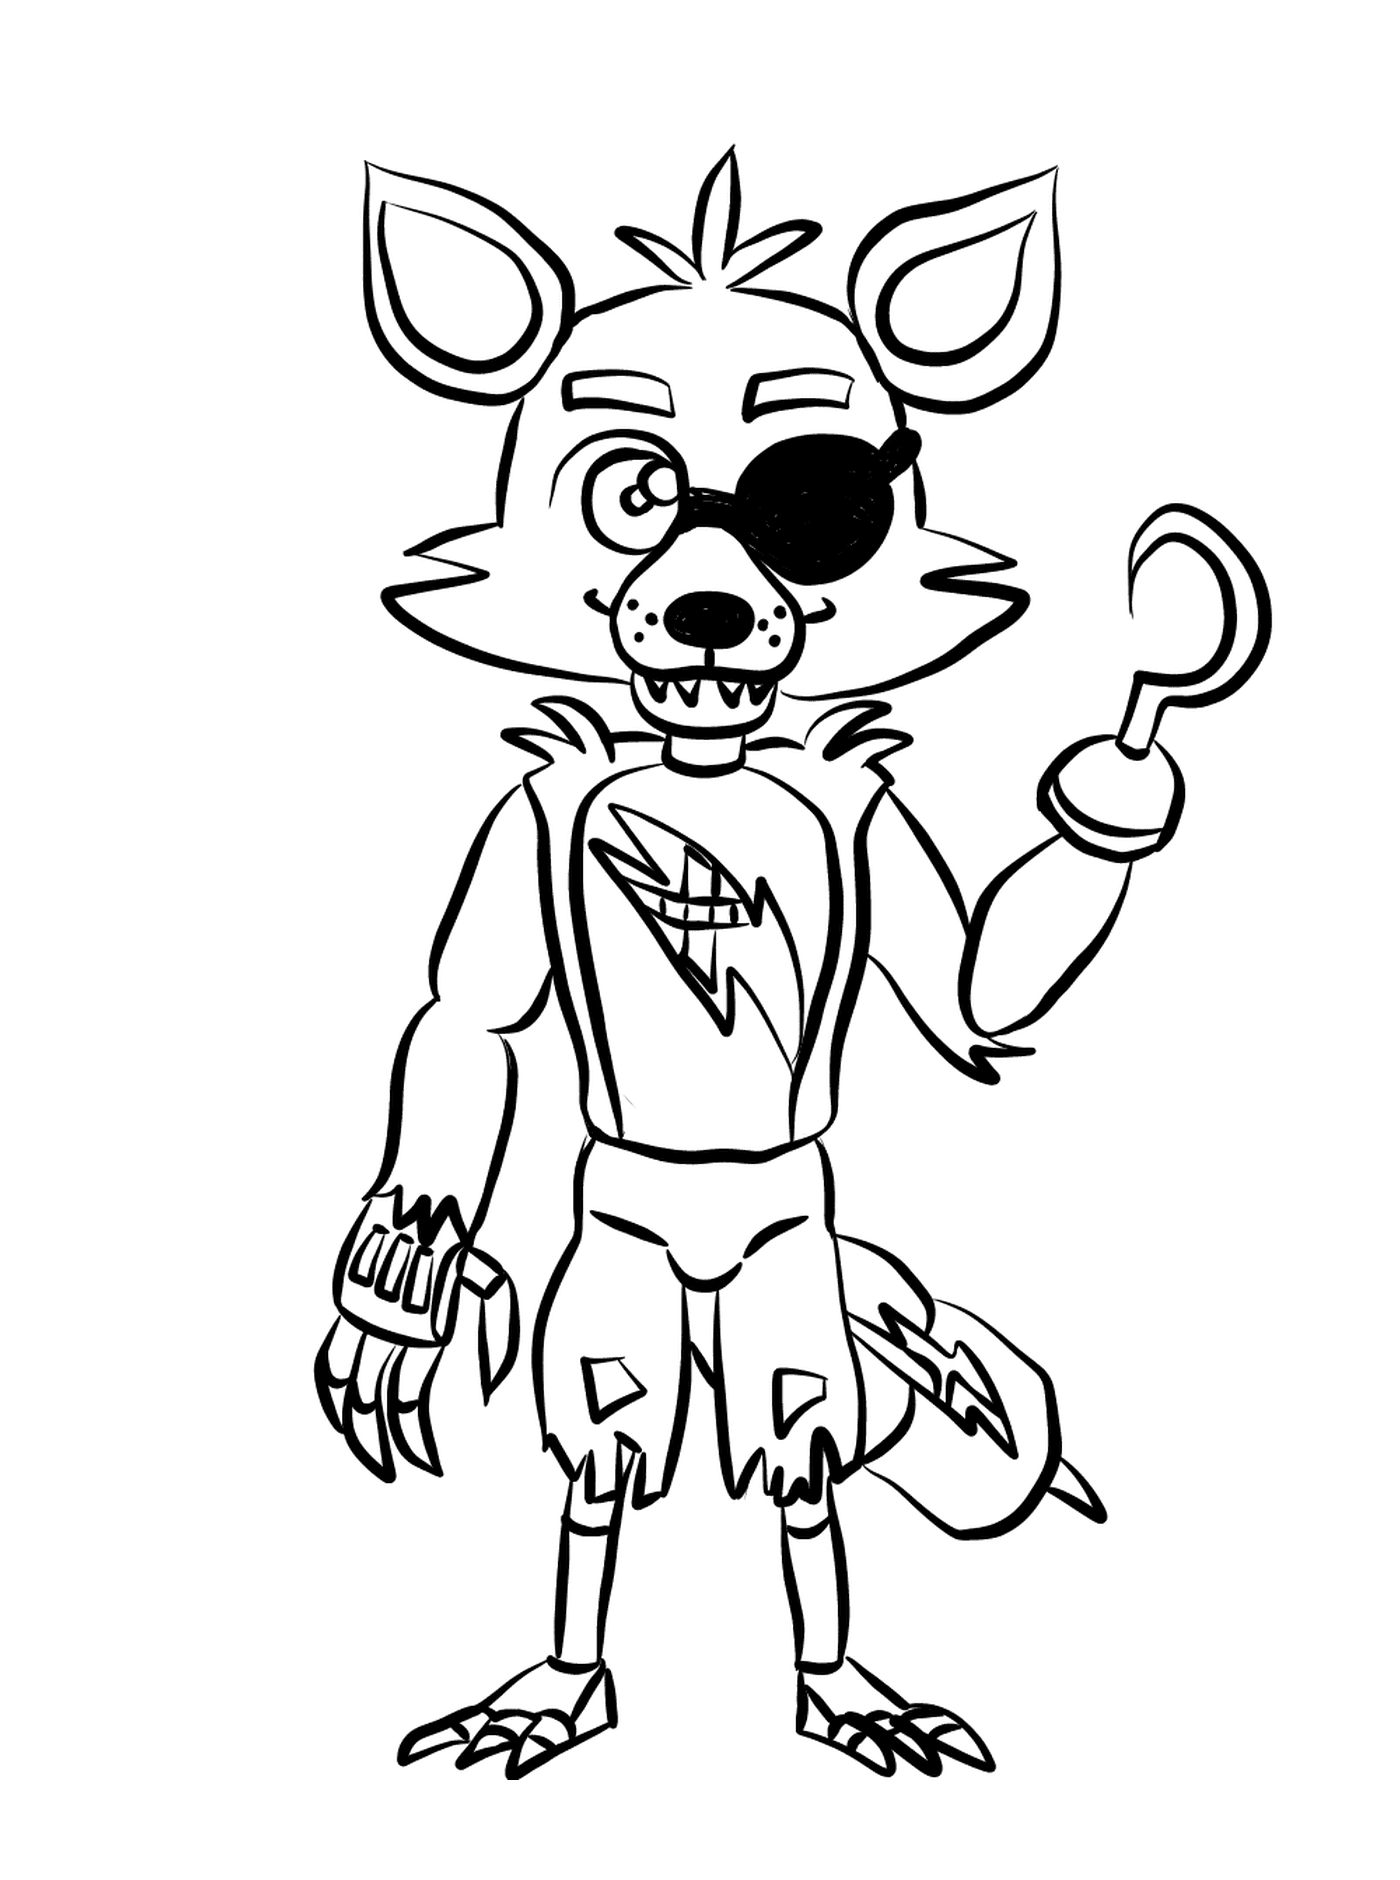  Um personagem de desenho animado representando Foxy 